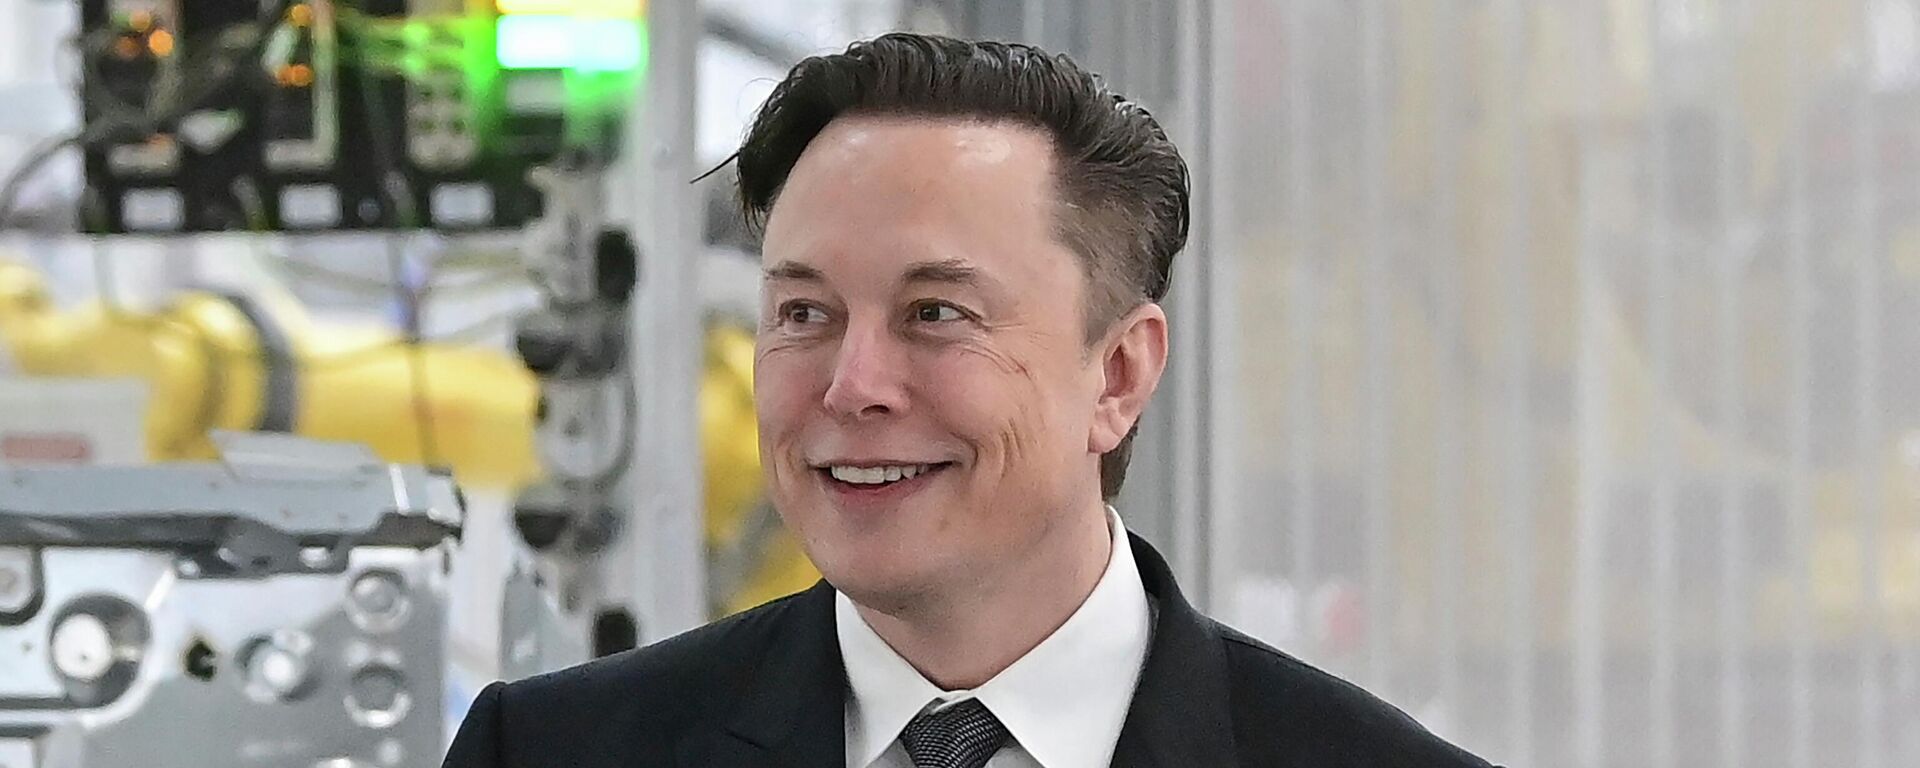  Tesla CEO Elon Musk attends the opening of the Tesla factory Berlin Brandenburg in Gruenheide, Germany on March 22, 2022. - Sputnik International, 1920, 12.10.2022